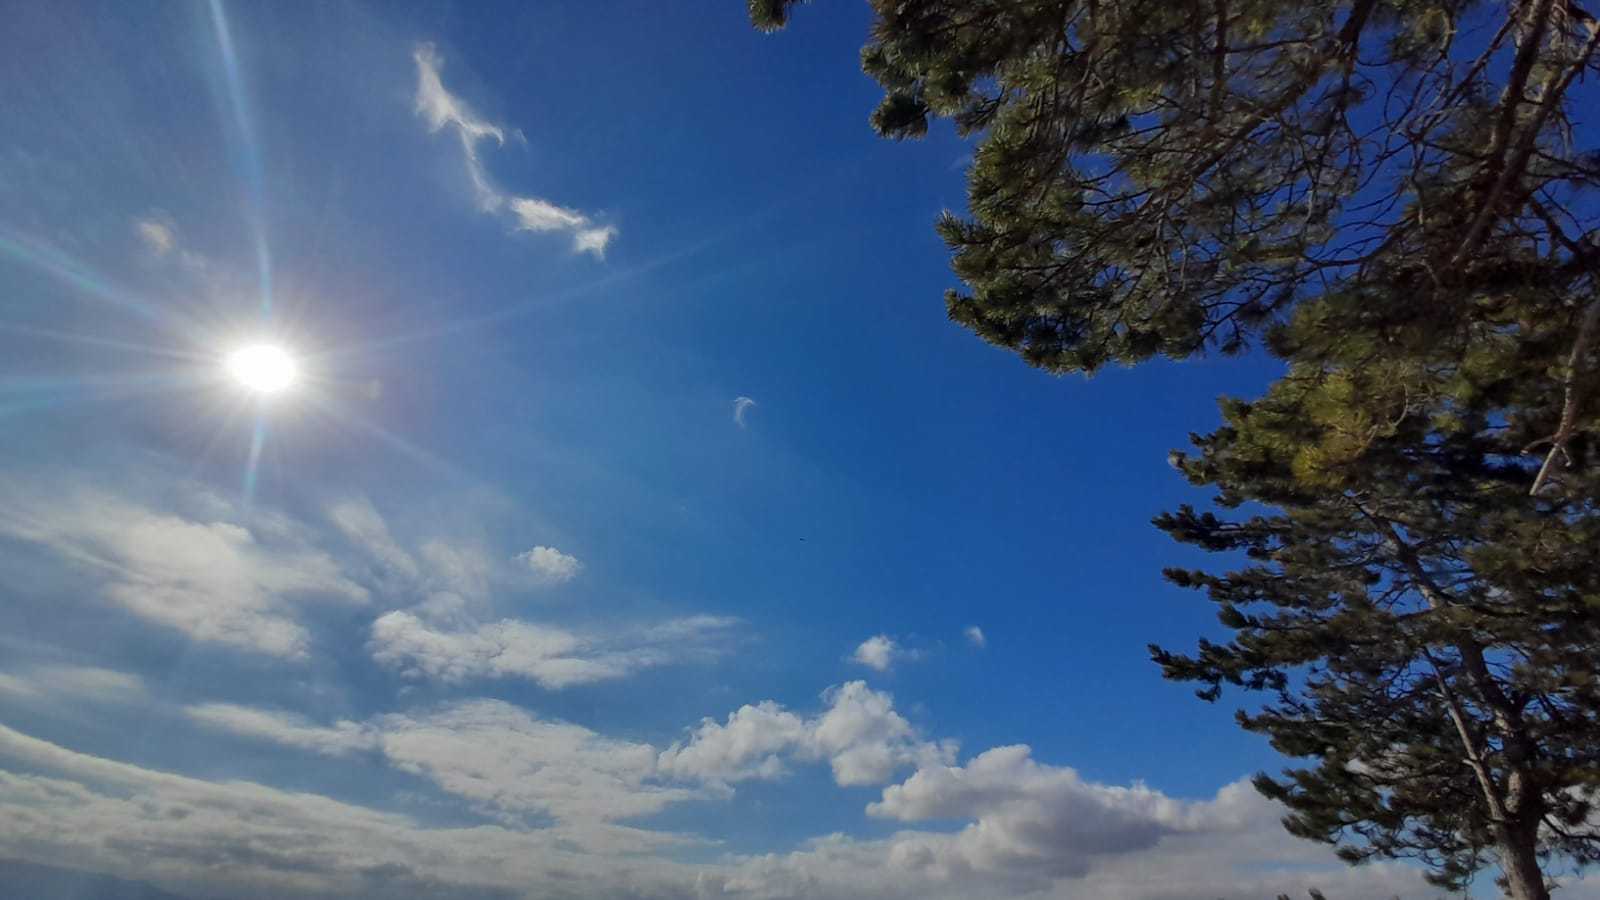 Meteo Agrigento: oggi domenica 31 Dicembre poco nuvoloso.